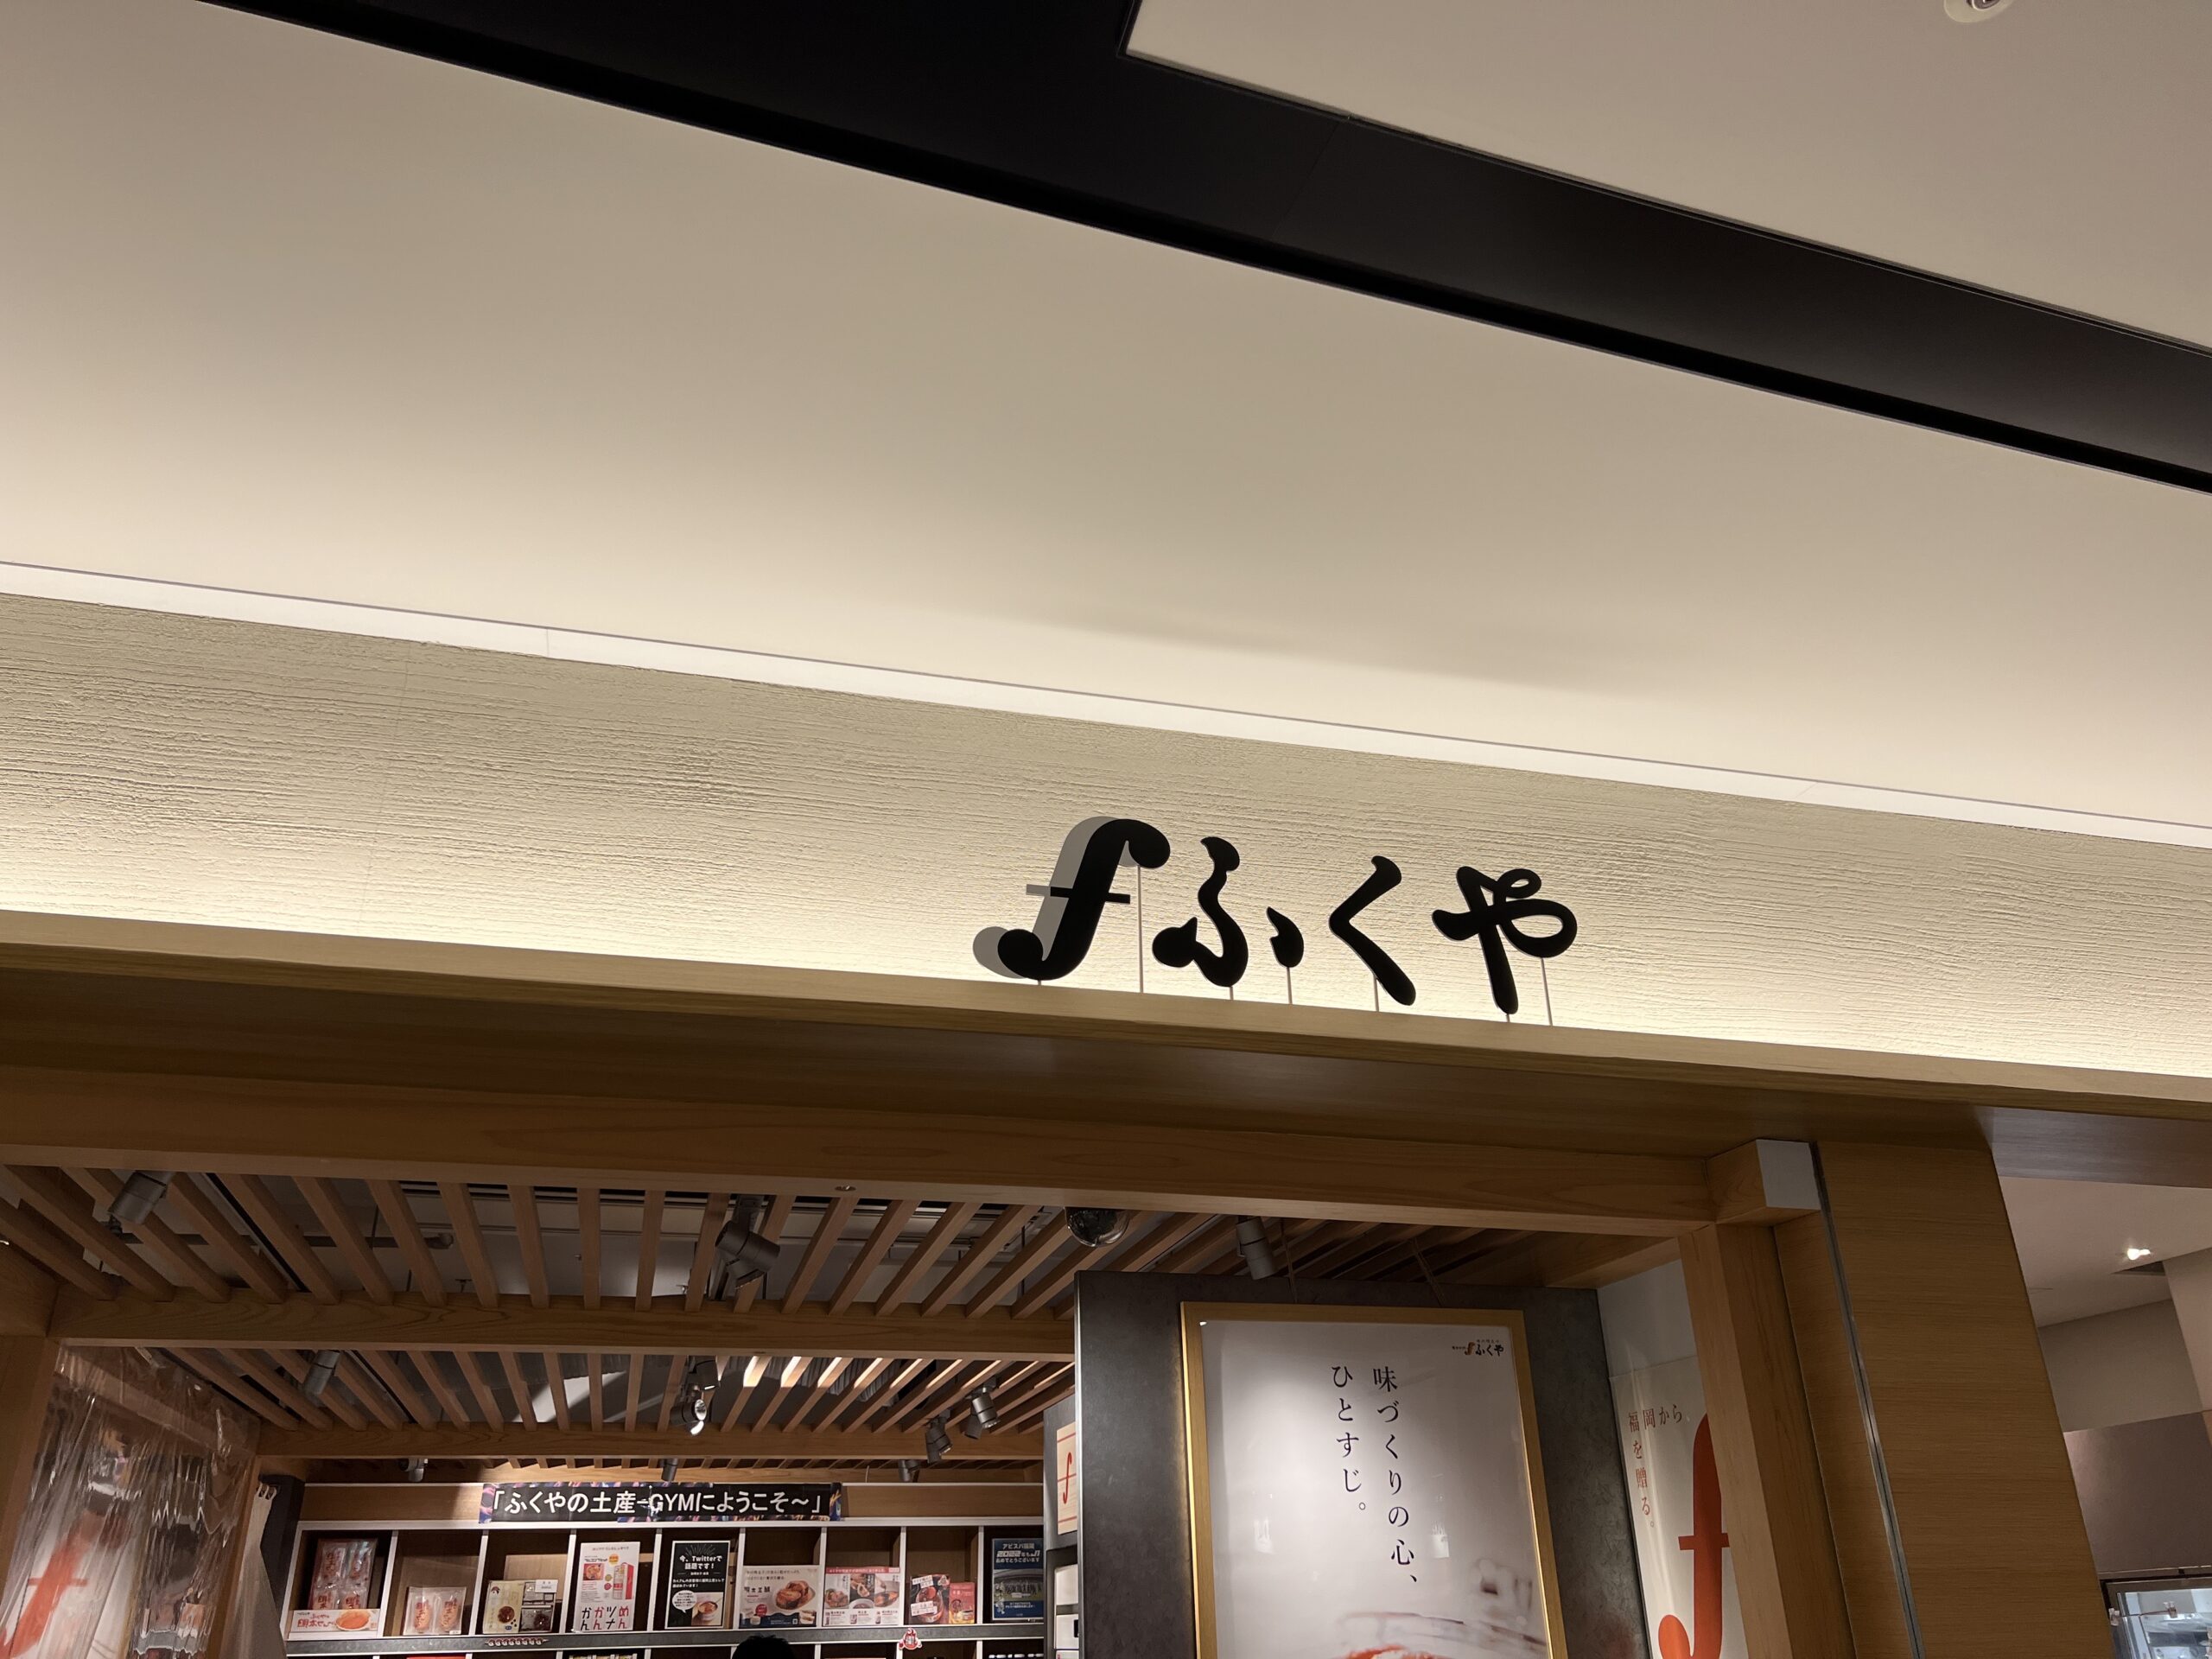 ふくや福岡空港店がB'z LIVE-GYMを歓迎するポップを掲げている様子の写真